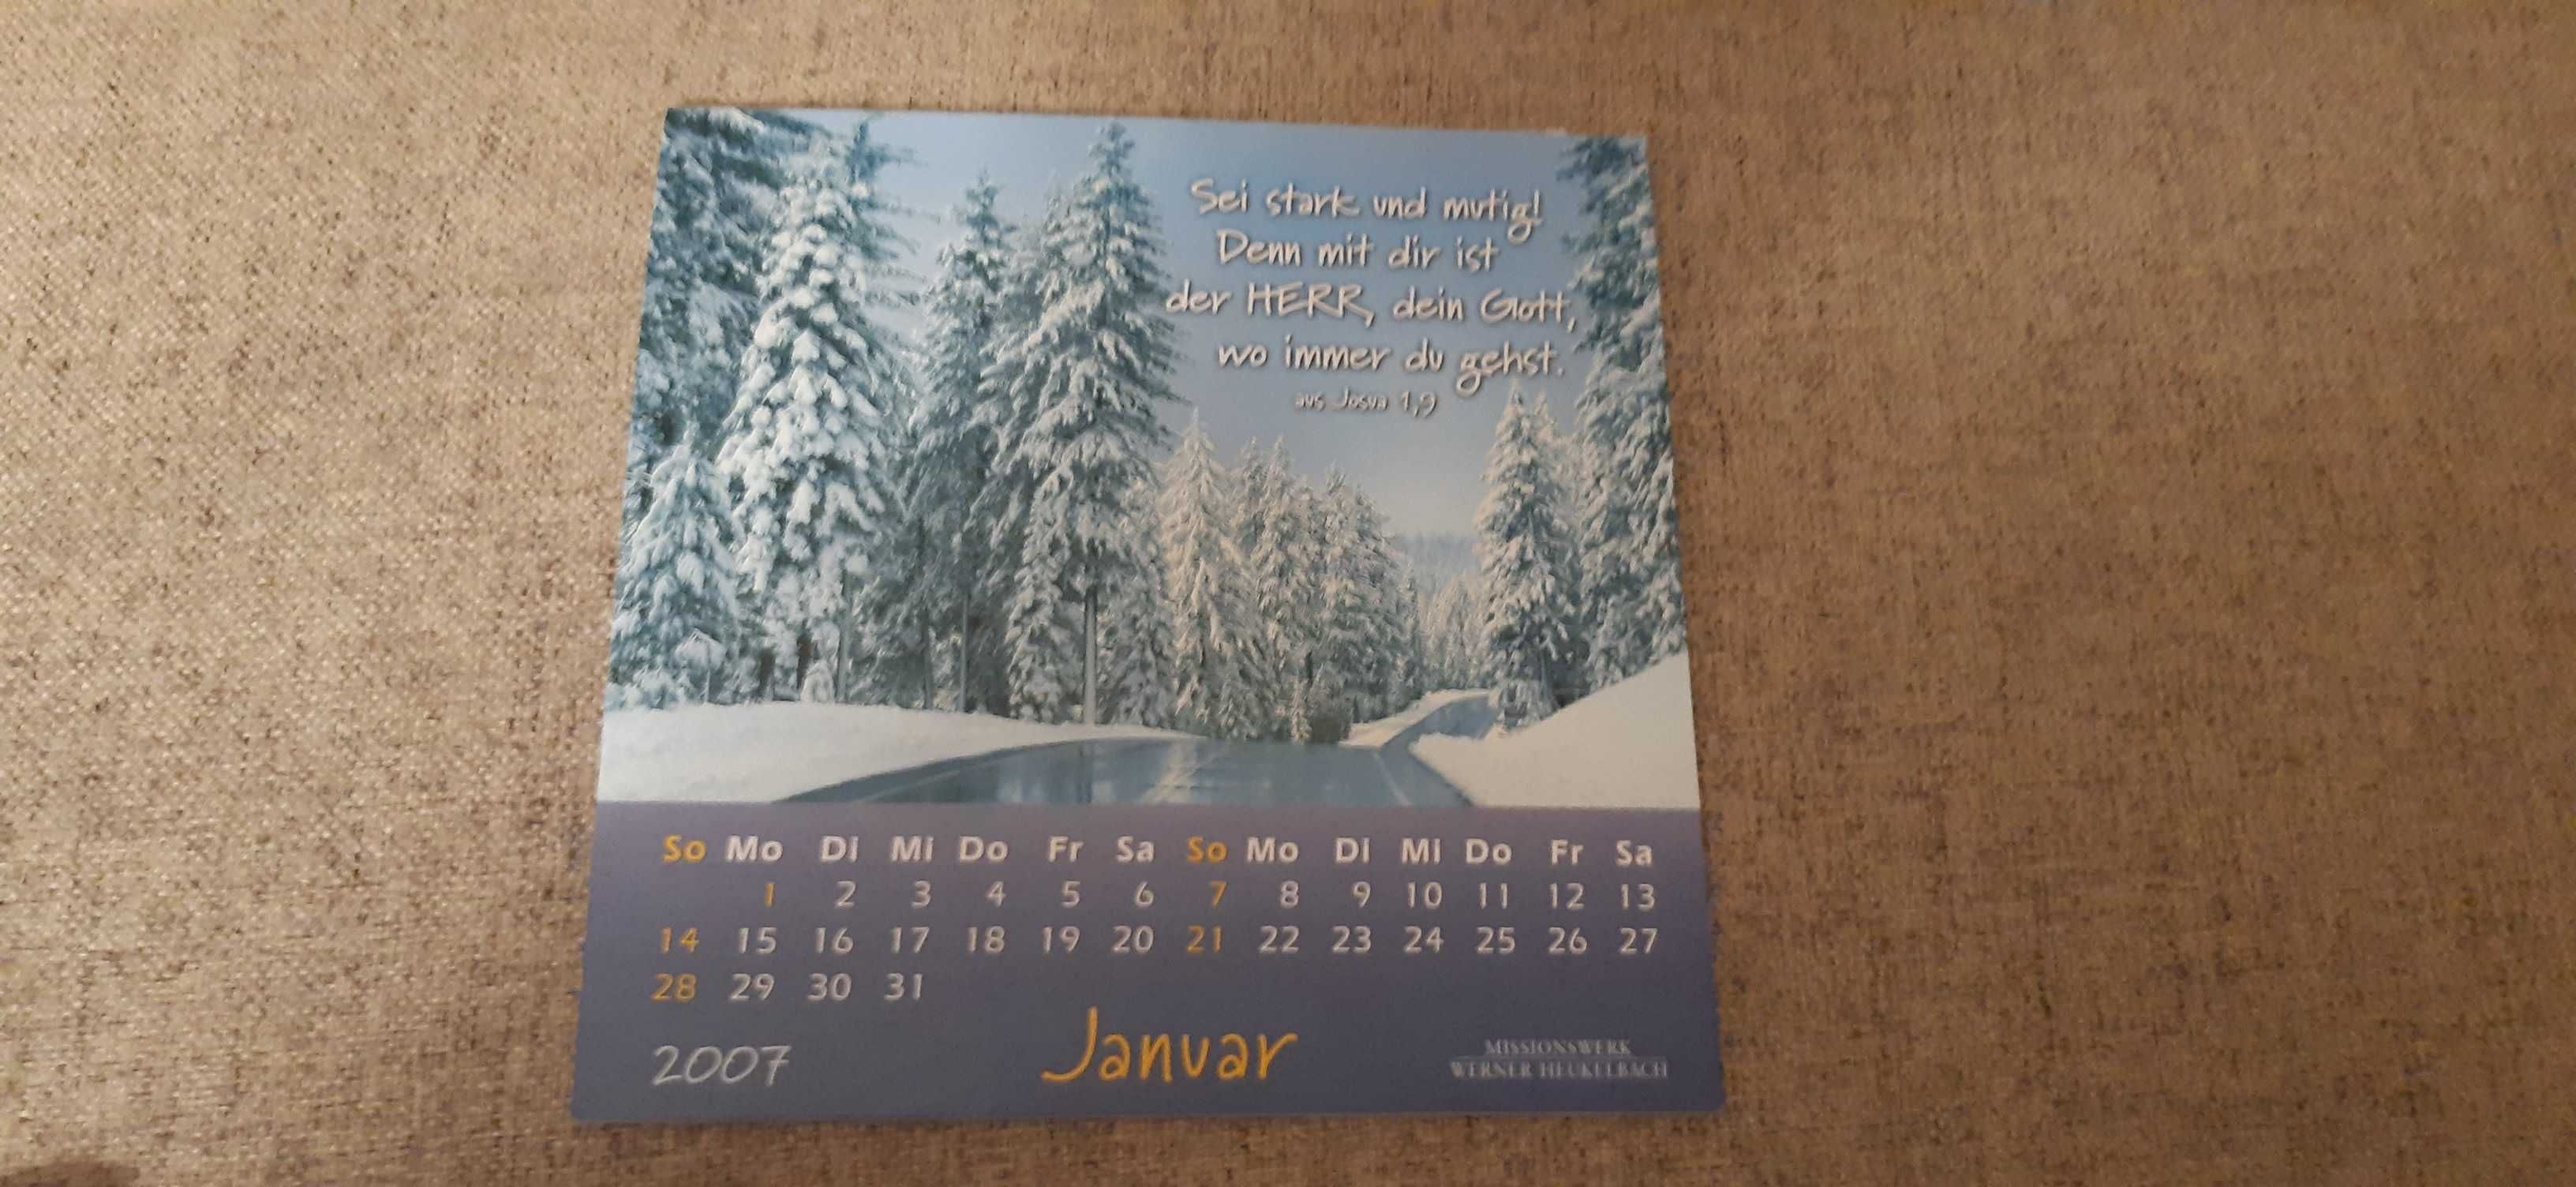 stary kalendarz niemiecki z 2007 roku z kartkami pocztowymi pocztówki